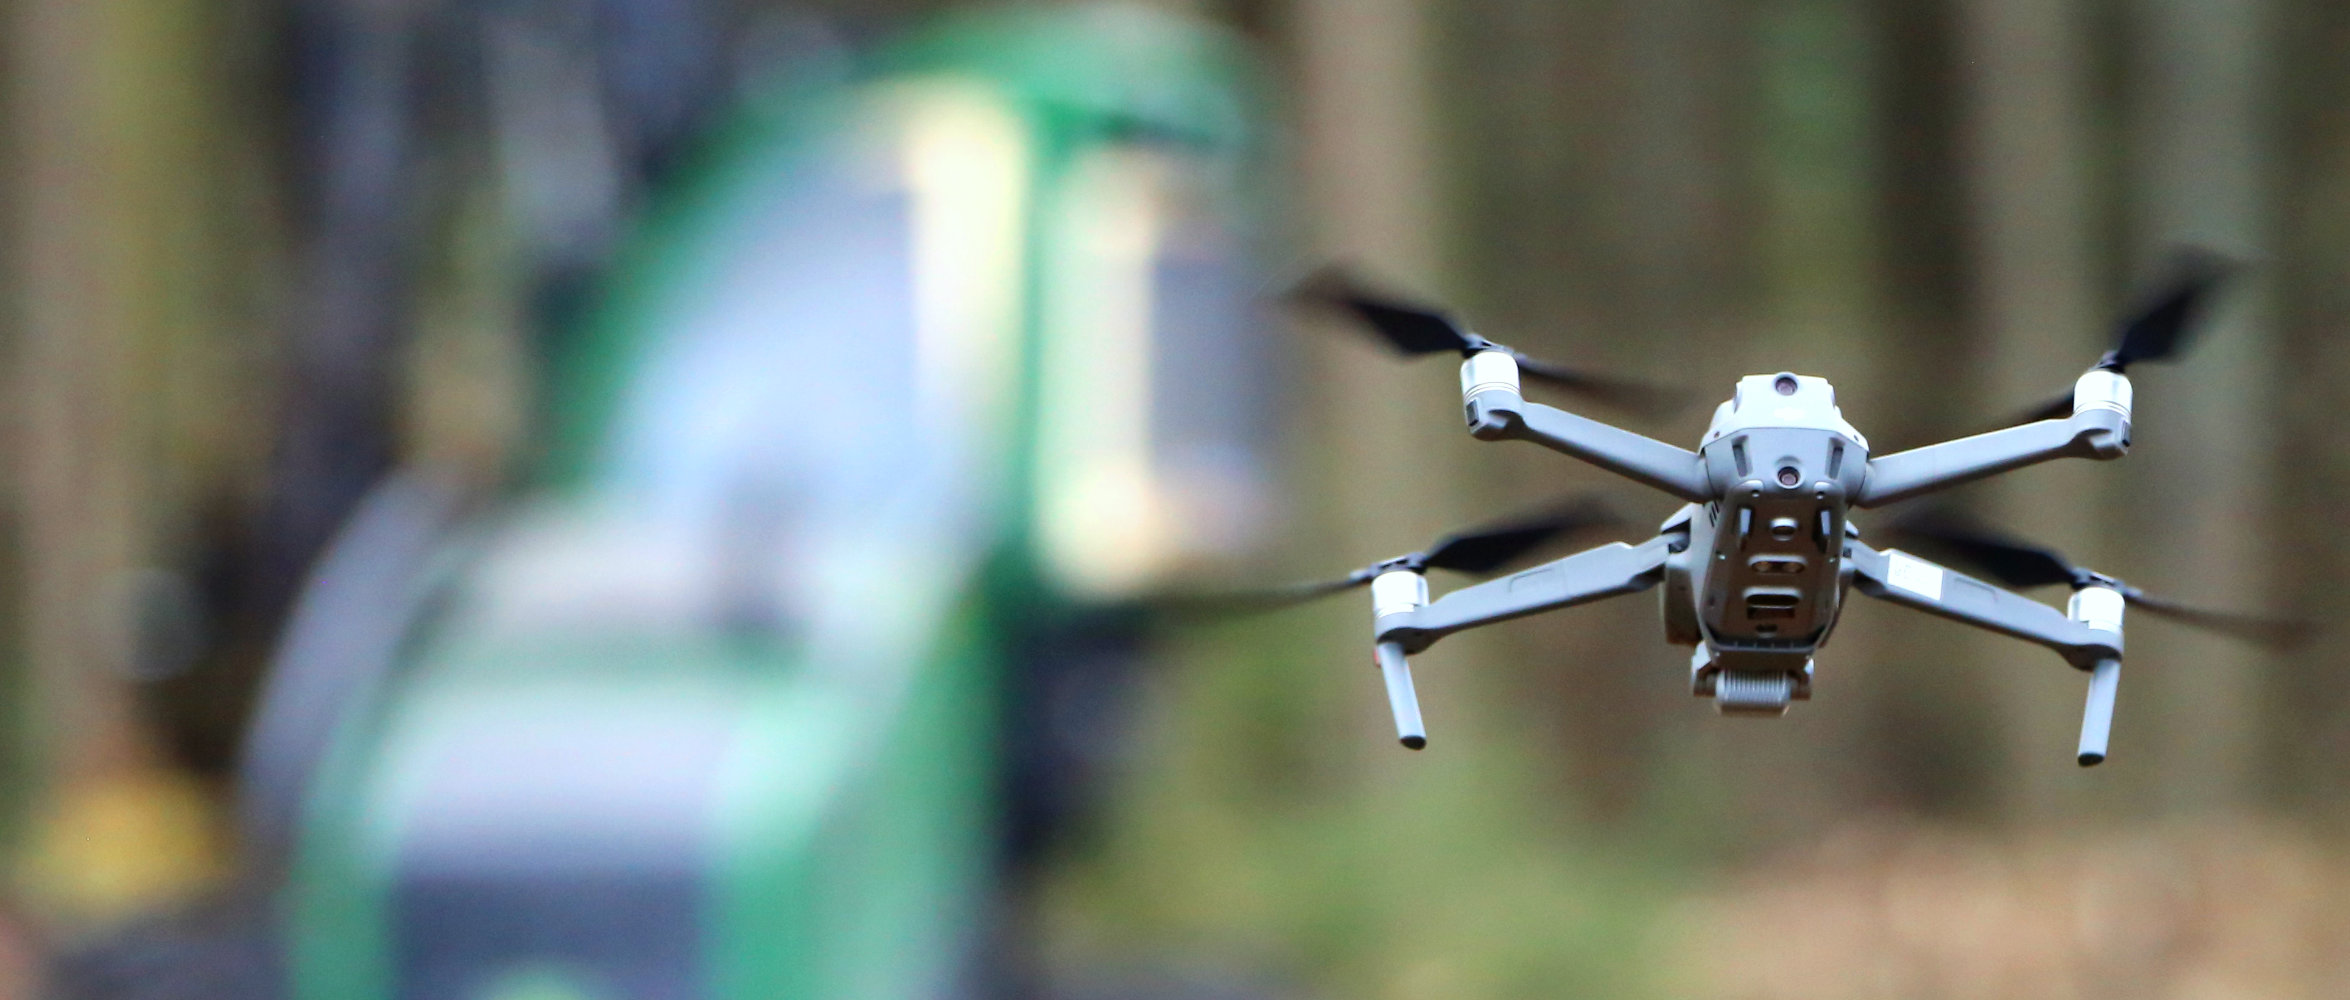 Filmaufnahmen mit Drohne und Harvester